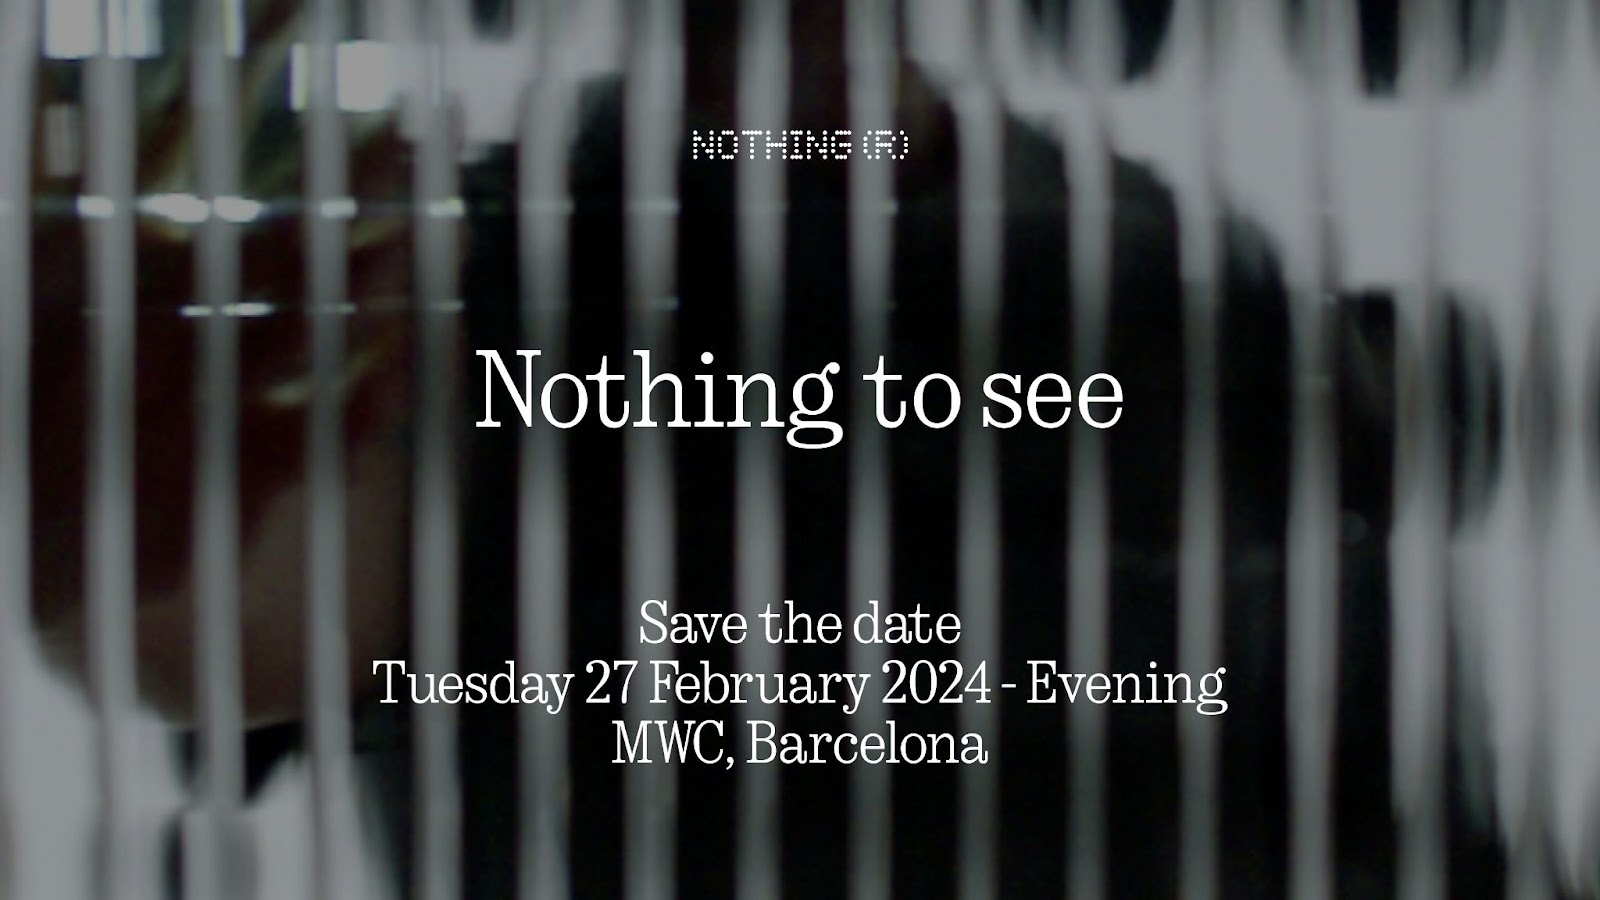 Presseeinladung zur MWC 2024-Veranstaltung von Nothing.